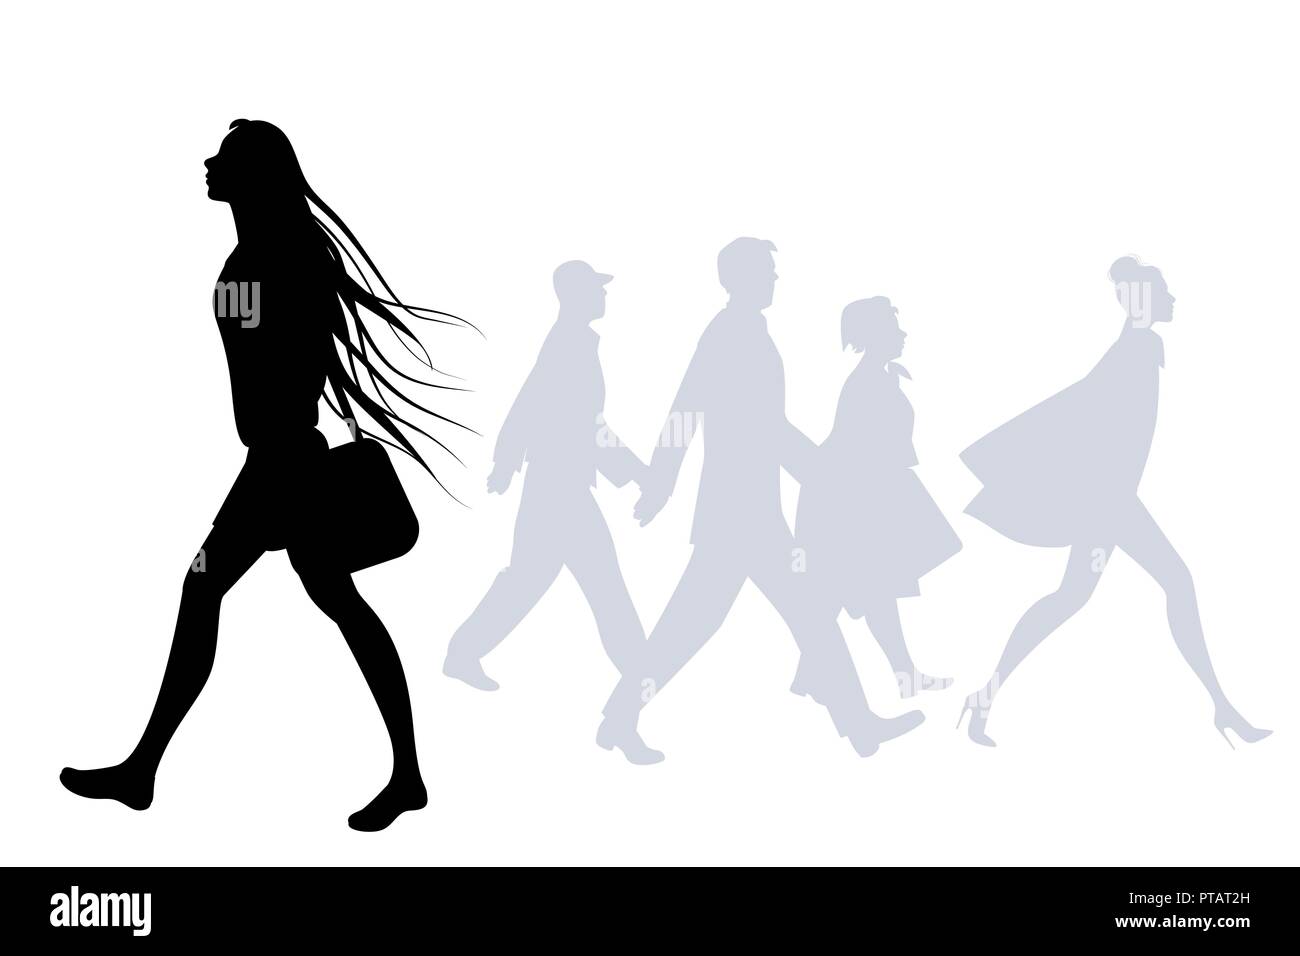 Jeune fille avec de longs cheveux dans le vent marche sur la rue. Silhouettes de personnes dans l'arrière-plan Illustration de Vecteur